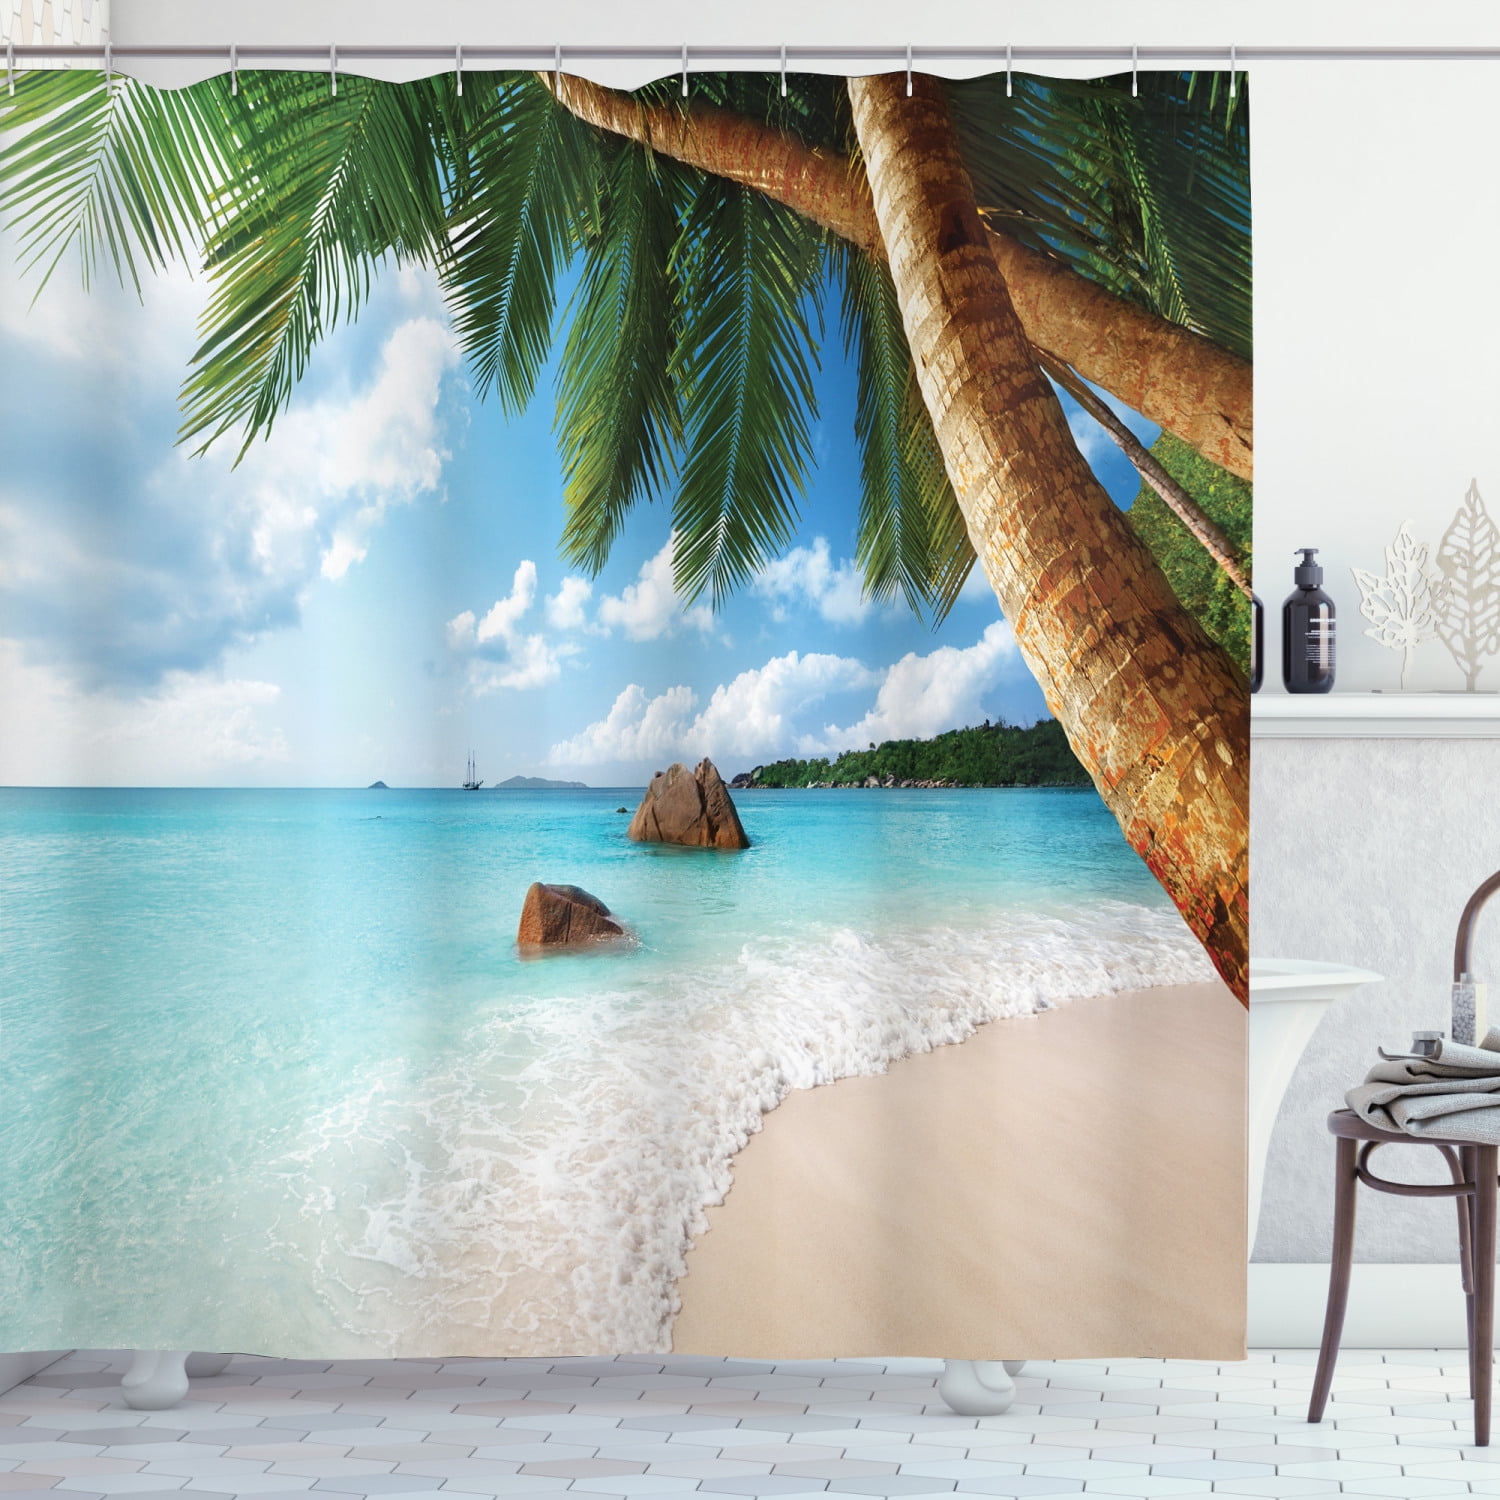 Sunny Sky Sand Beach Scenic Palm Trees Fabric Shower Curtain Set Bathroom Mat 